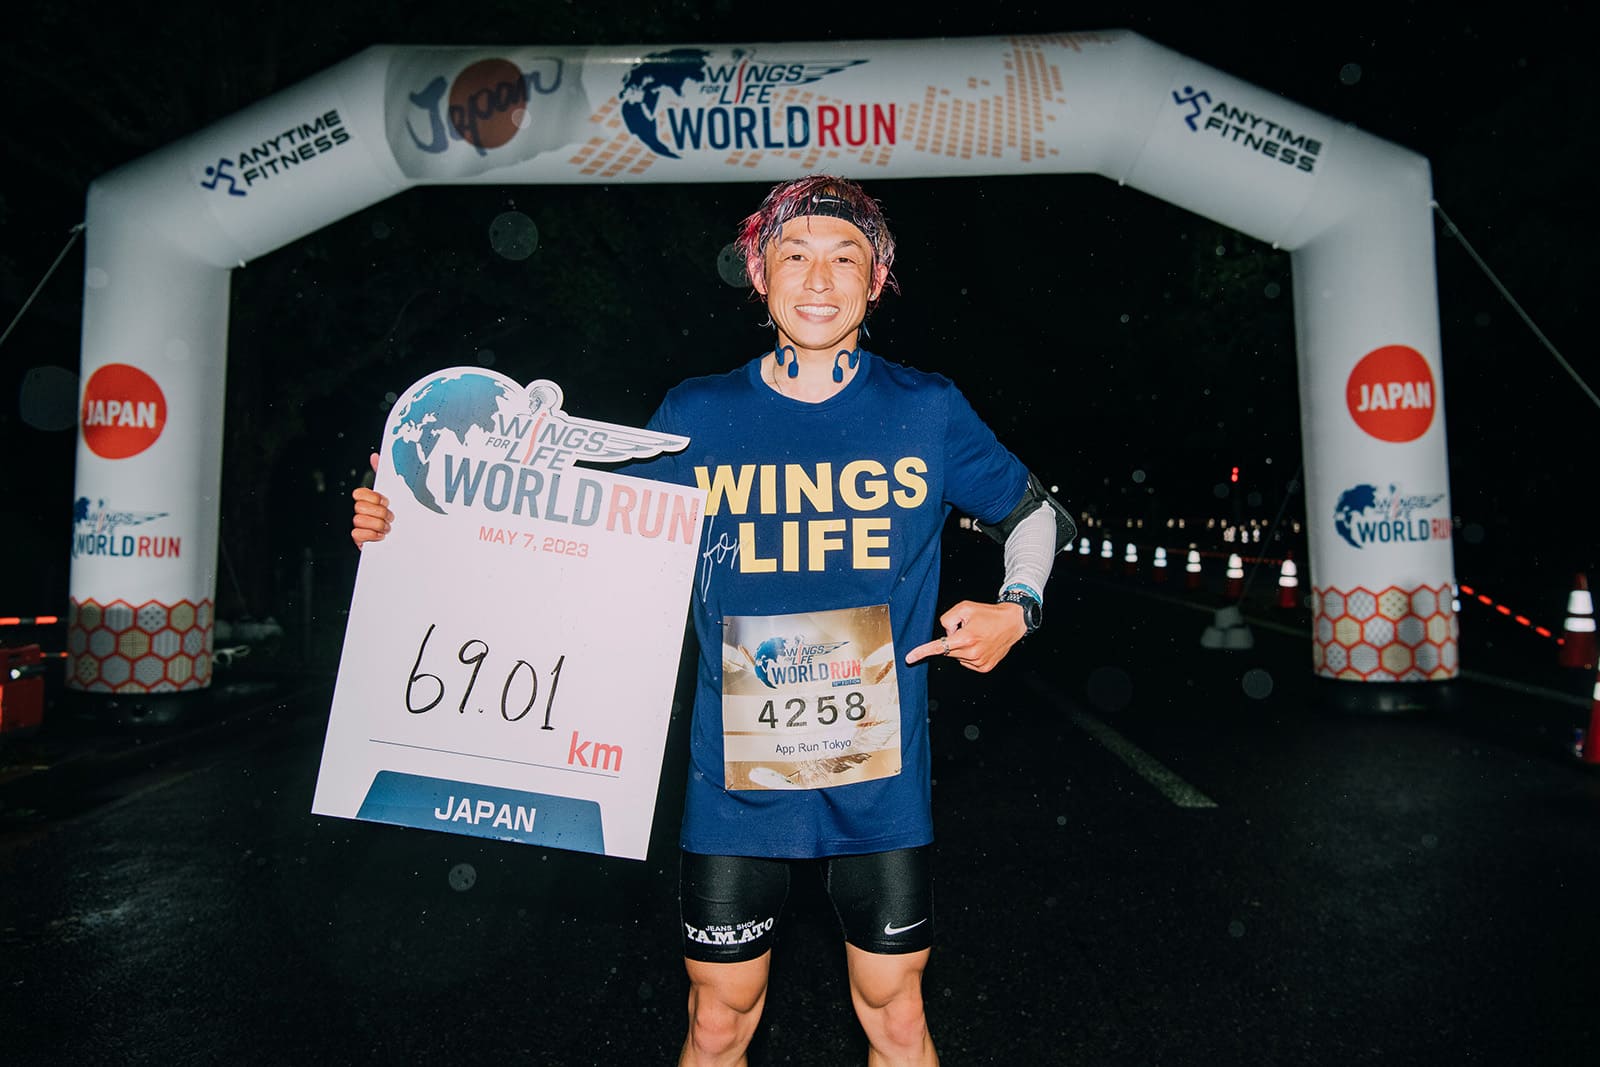 今年Wings for Life由日本的Jo Fukuda以69.01公里再次奪下男子冠軍